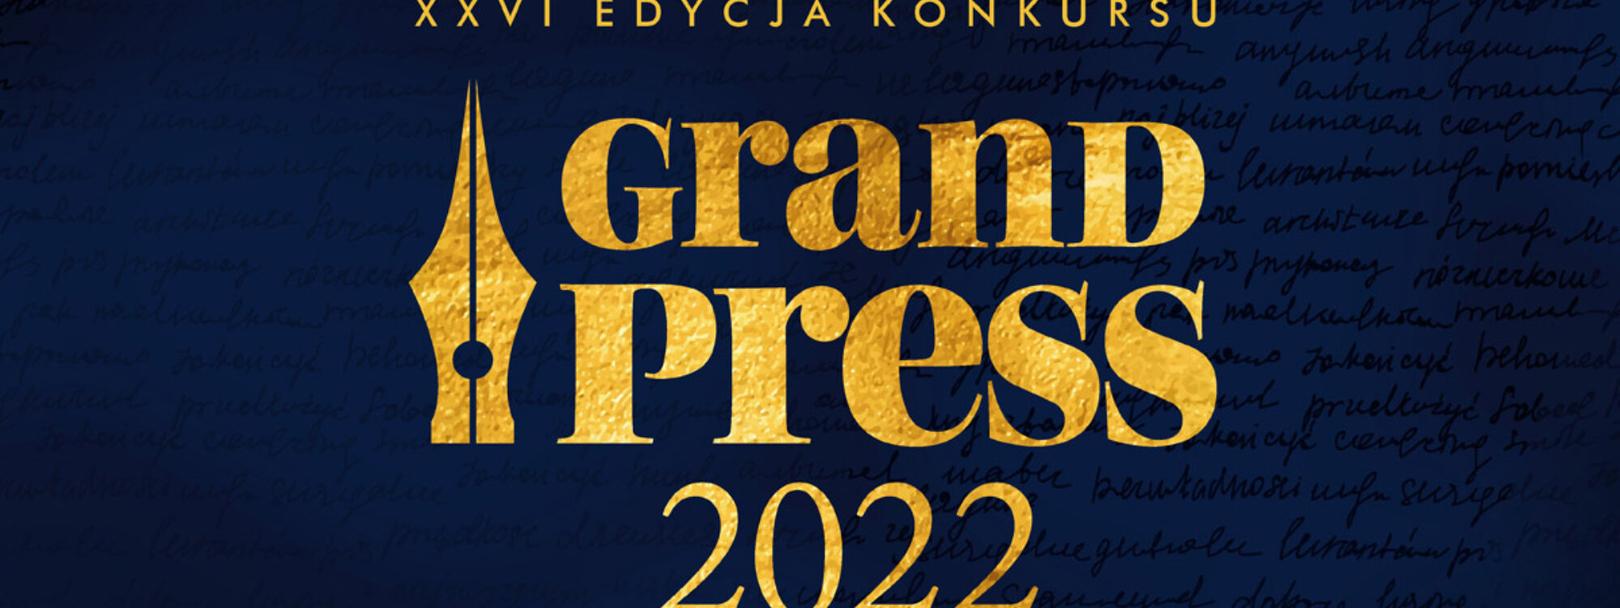 Nominacje do Grand Press 2022